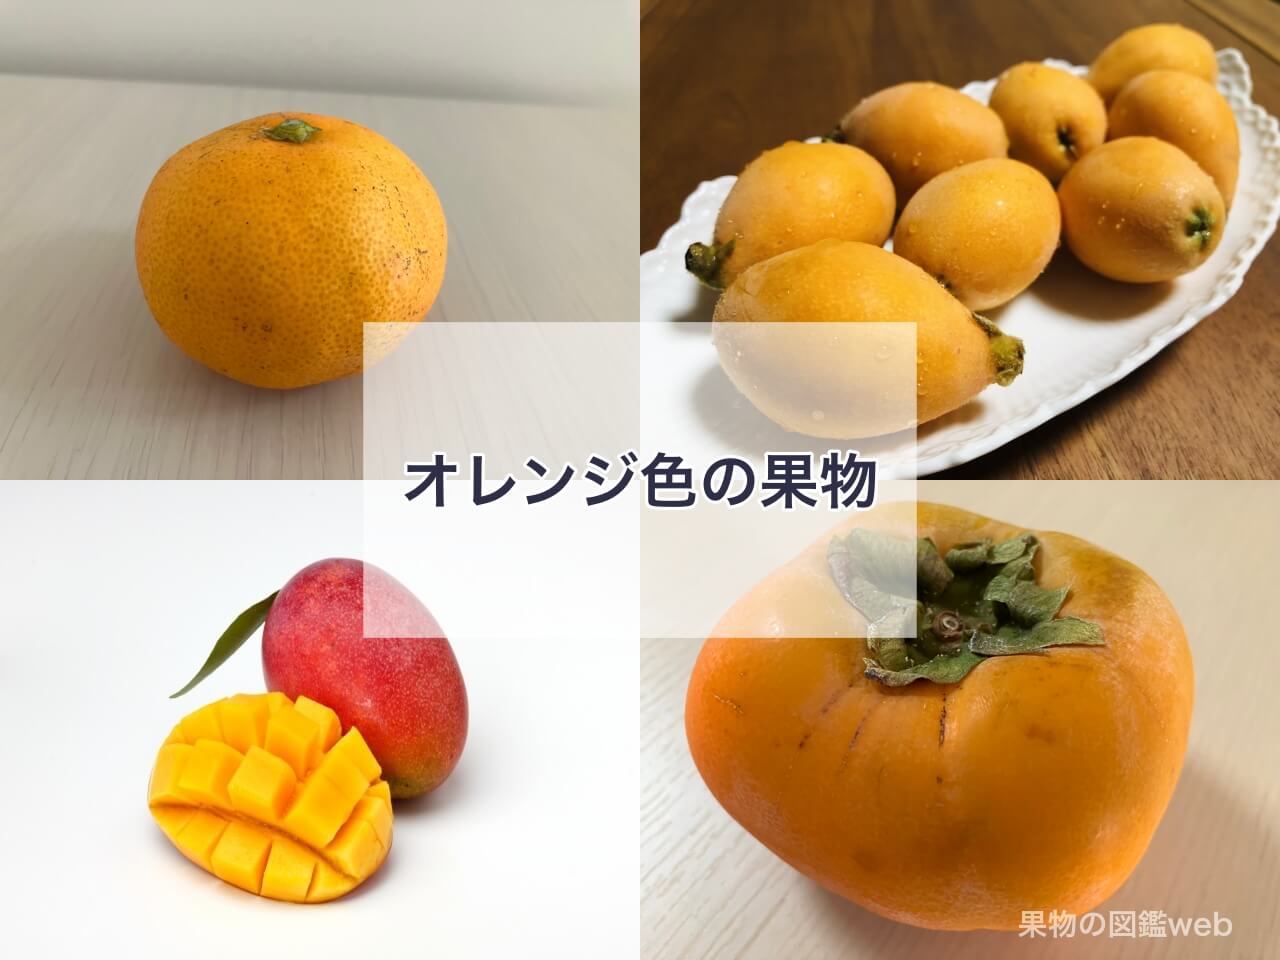 オレンジ色の果物